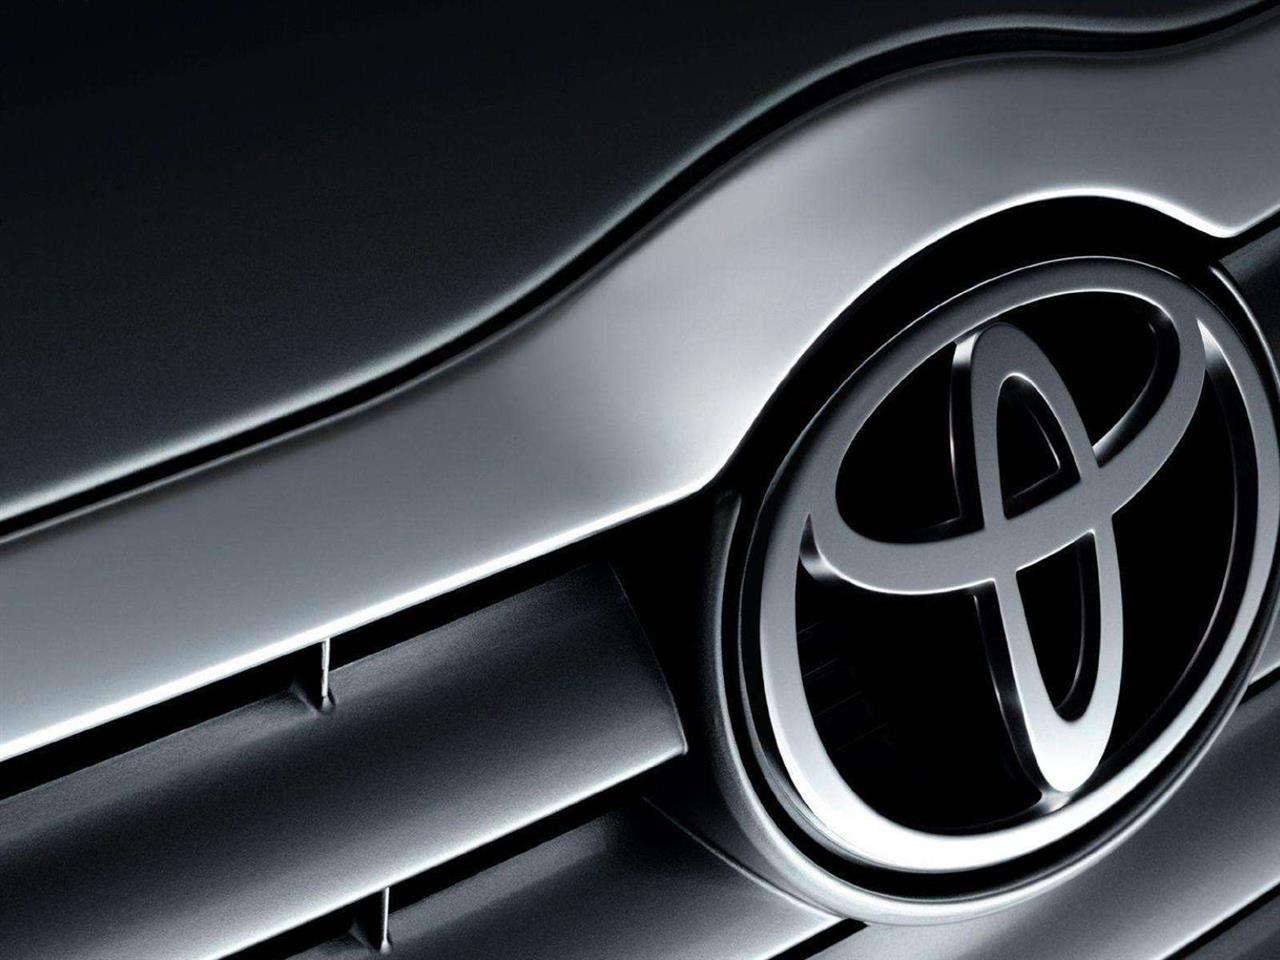 Toyota, Yamato Transport i partnerzy planują komercjalizację wymiennych baterii do samochodów